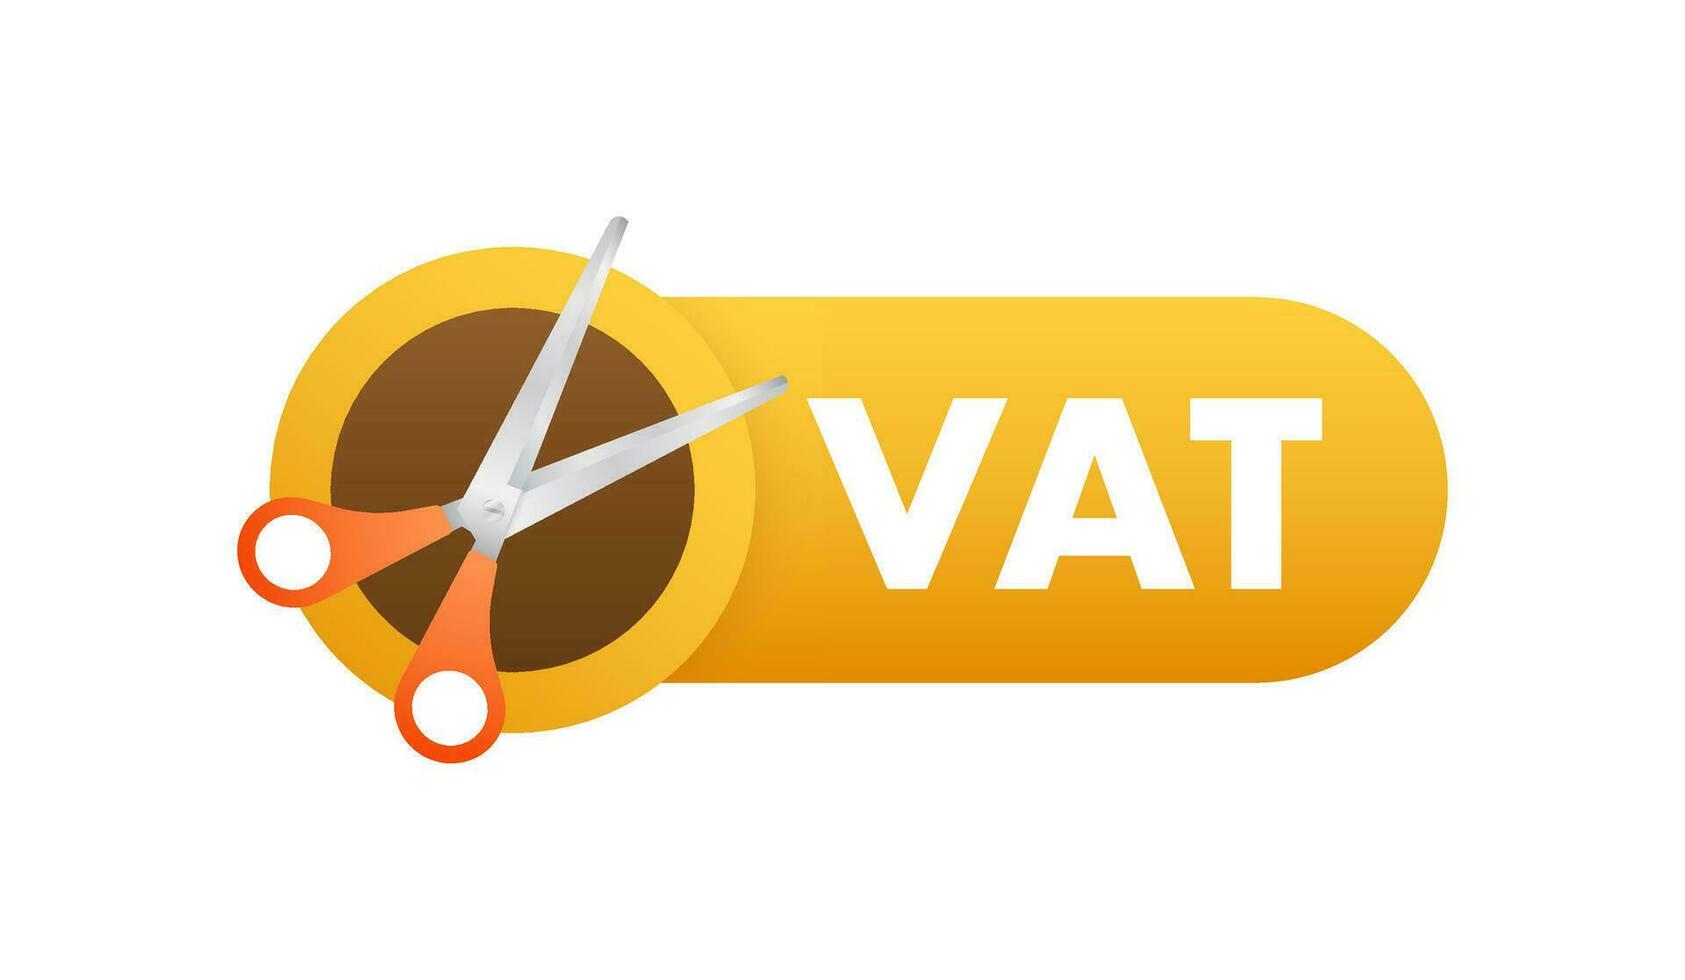 cortar IVA o reducir impuesto tasa. ayuda económico recuperación. vector valores ilustración